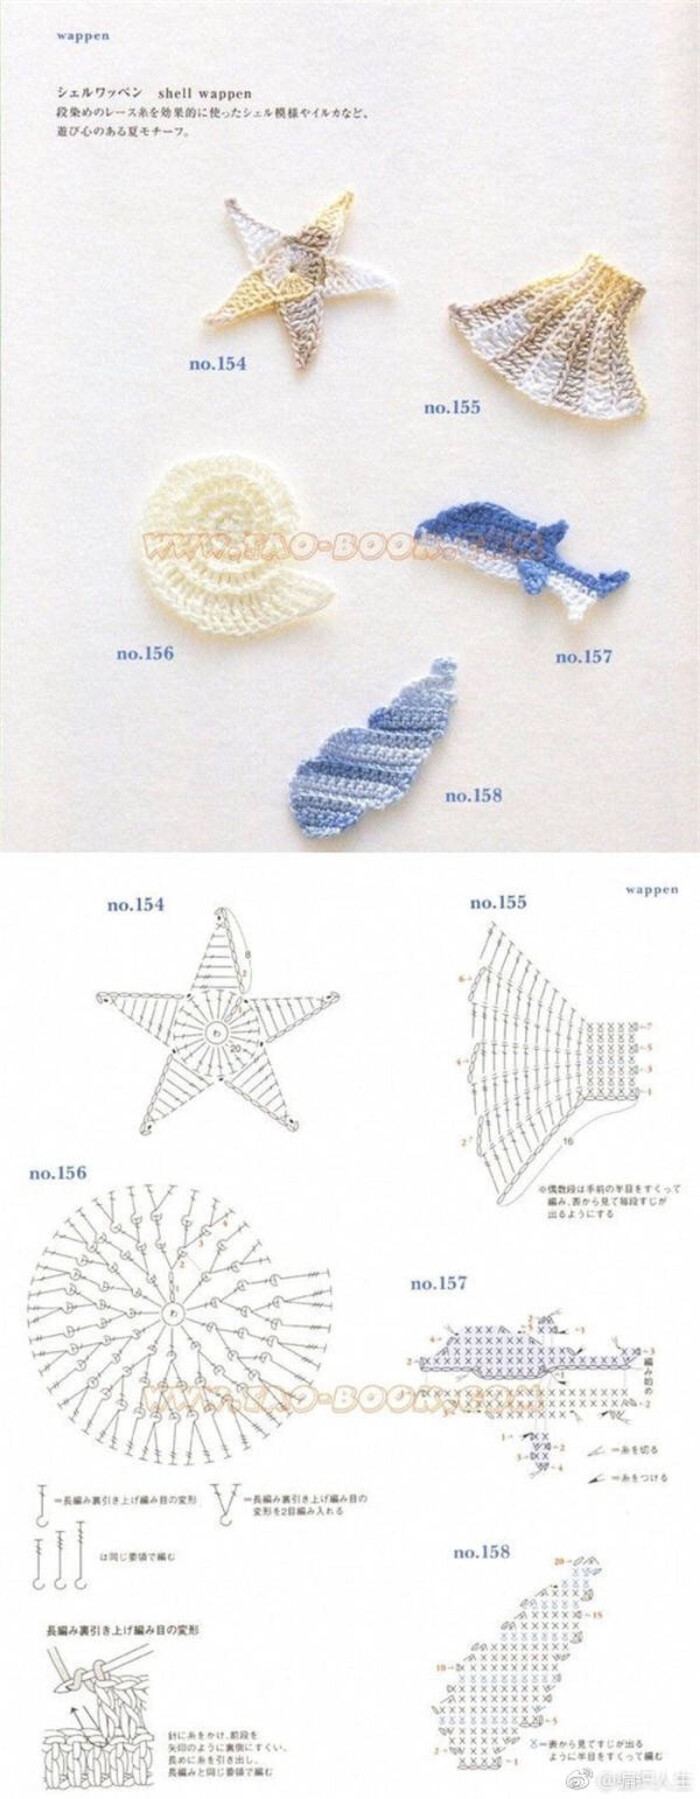 钩织图解海螺贝壳海星花片